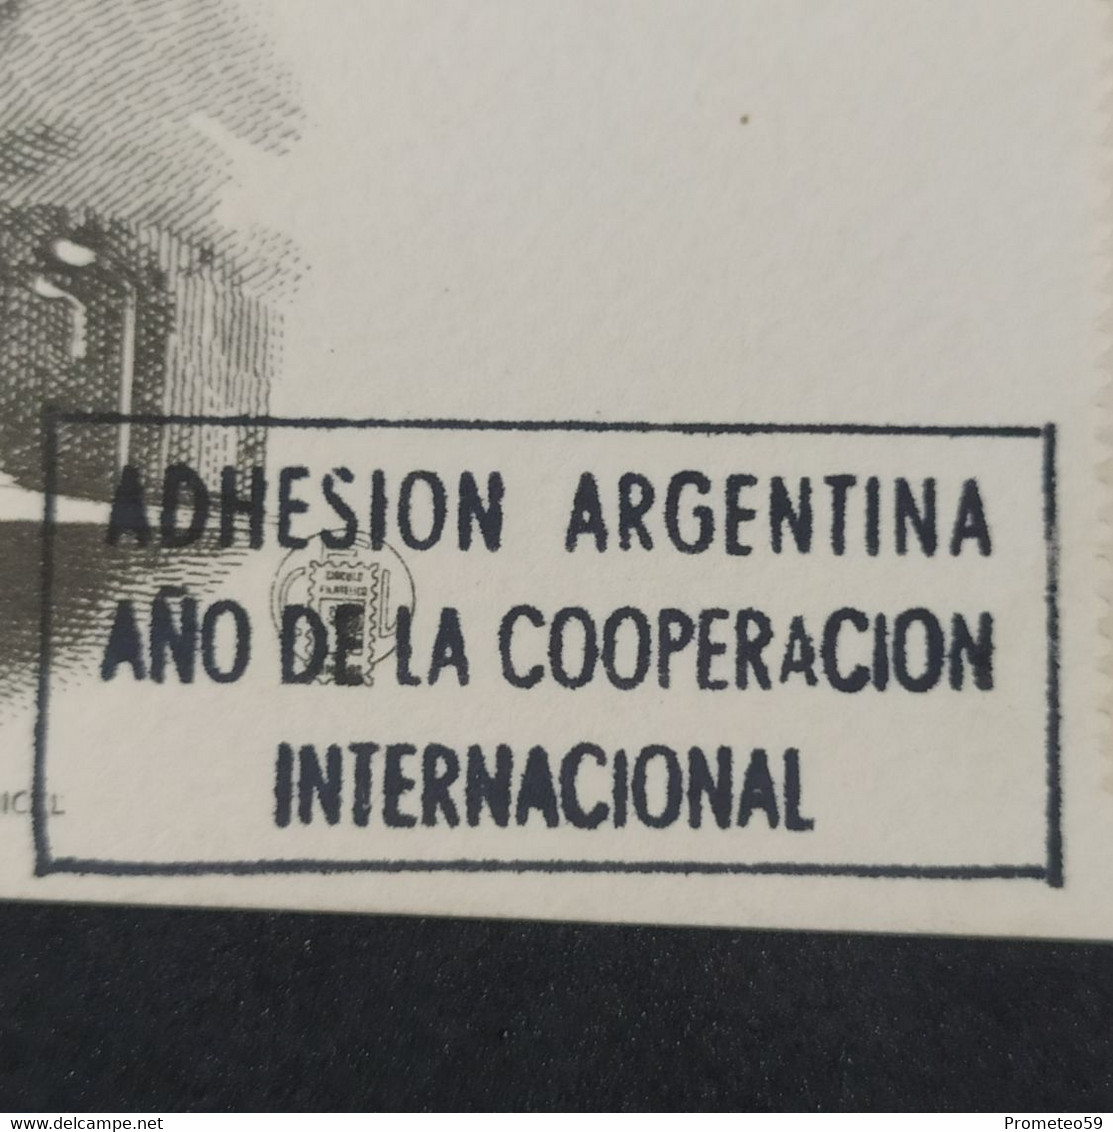 Día De Emisión – Tema: Investigaciones Del Espacio – 29/5/1965 – Origen: Argentina - Booklets